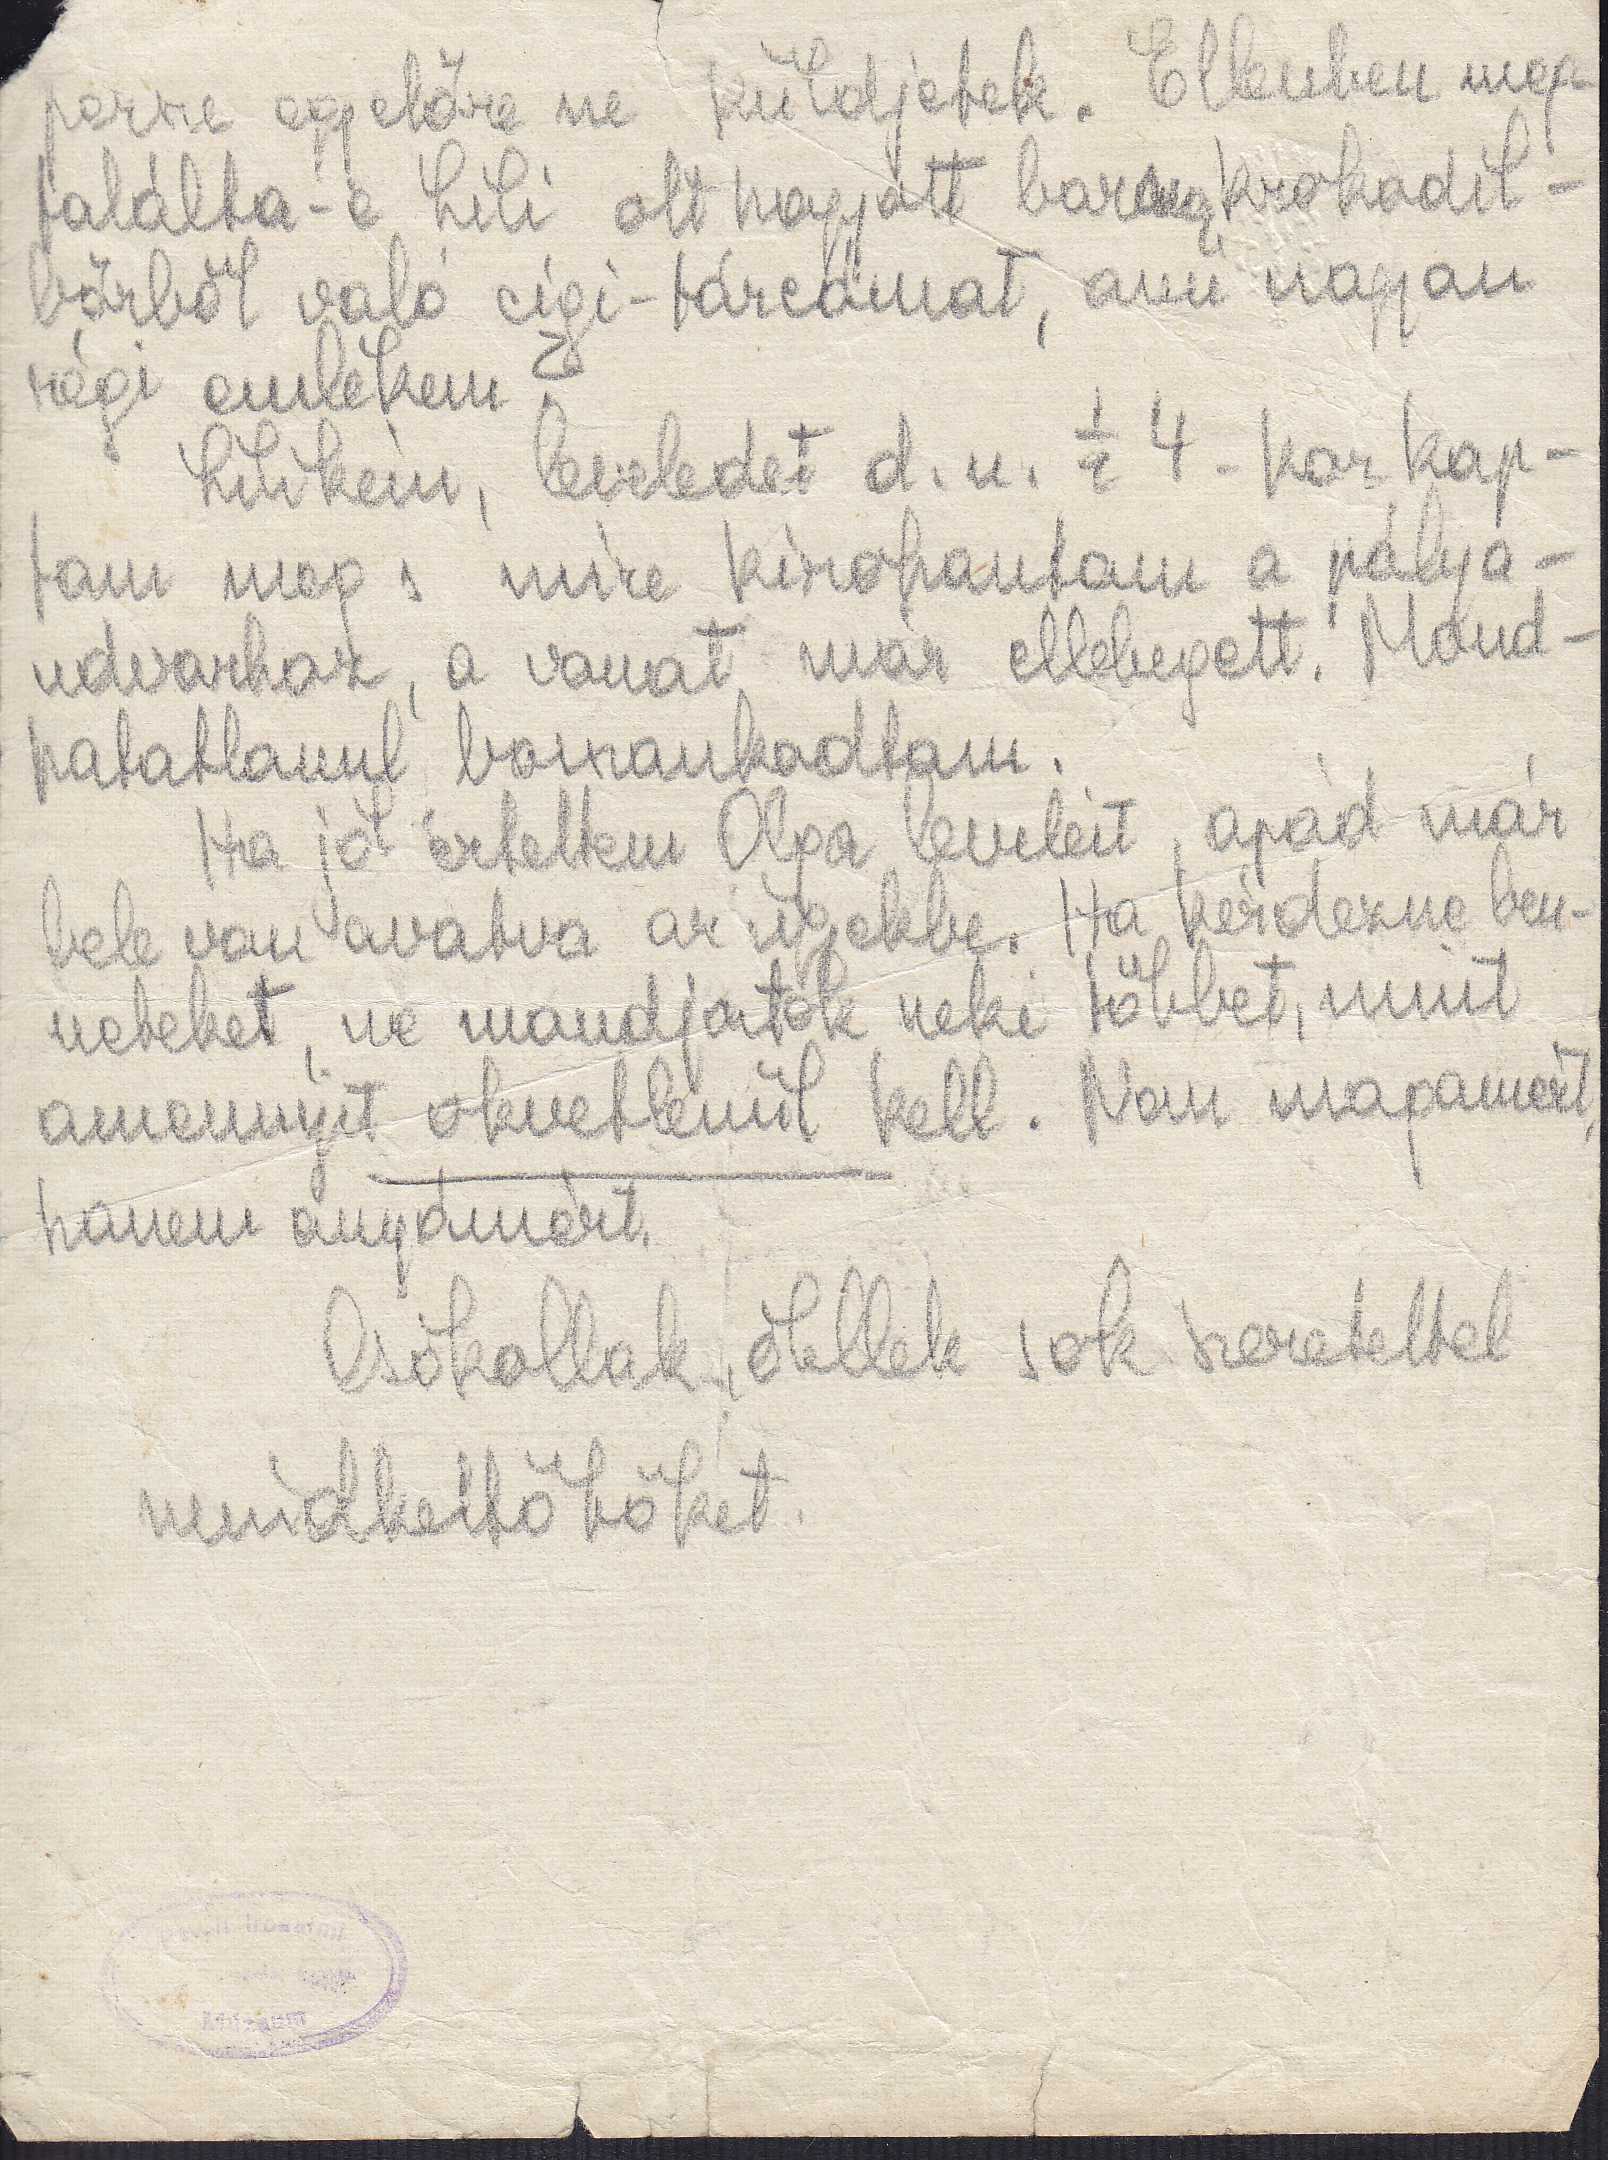 A verzón Déry Szilasi Vilmosné Rosenberg Lilinek szóló, töredékben maradt, feltehetően el nem küldött levelének autográf, ceruzaírású fogalmazványa (PIM, Kézirattár, Déry Tibor-hagyaték)